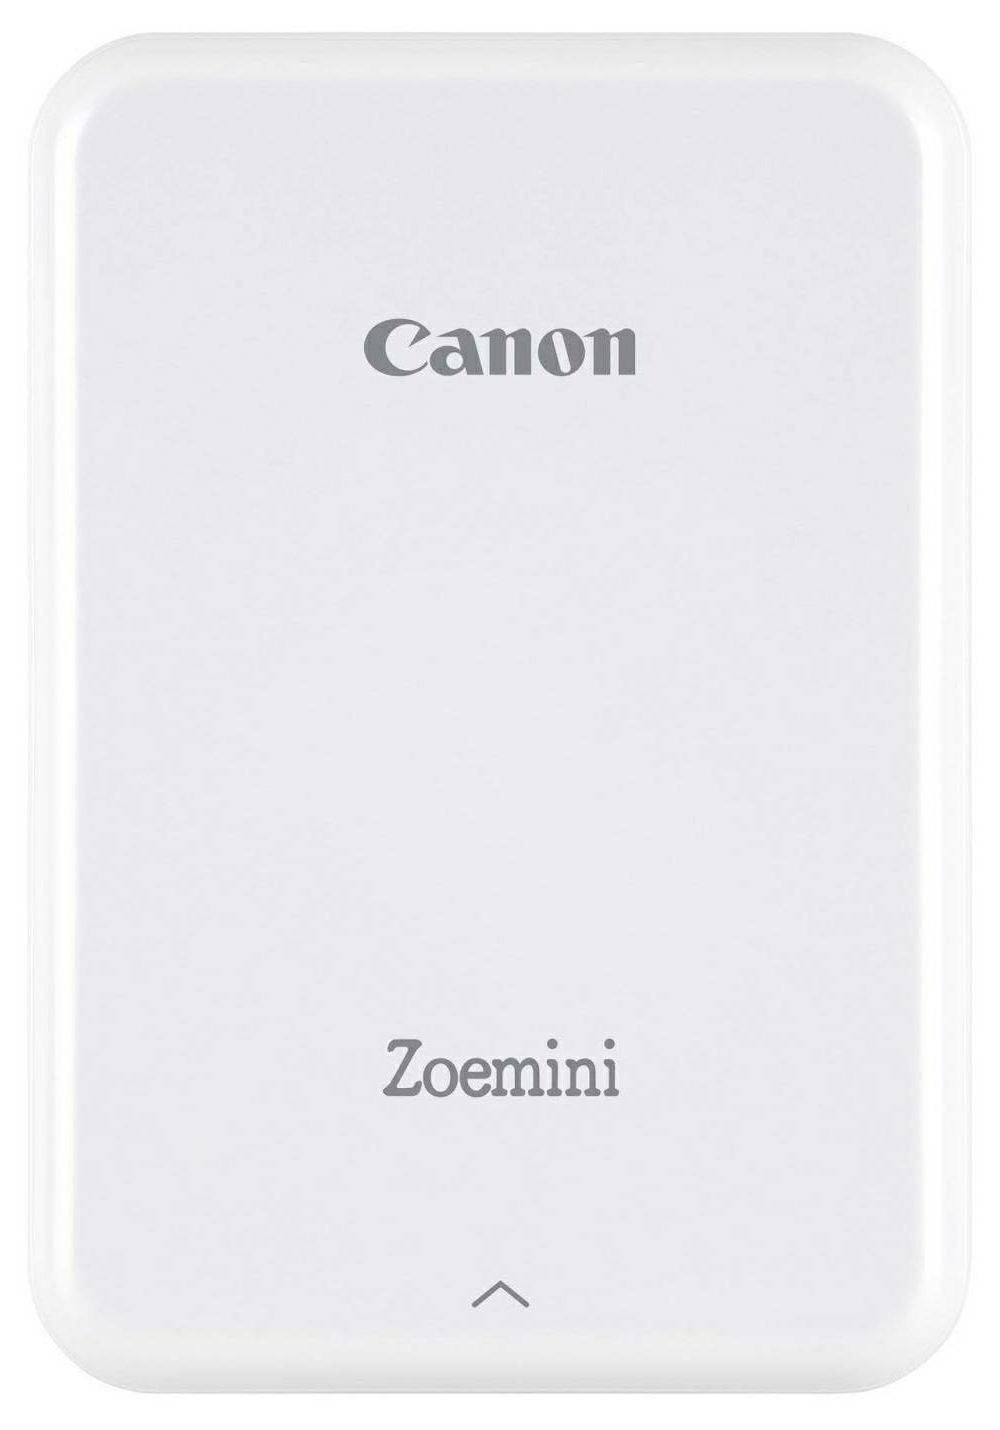 Canon Zoemini Zink Mini Mobile Photo Printer White Silver (3204C006AA)